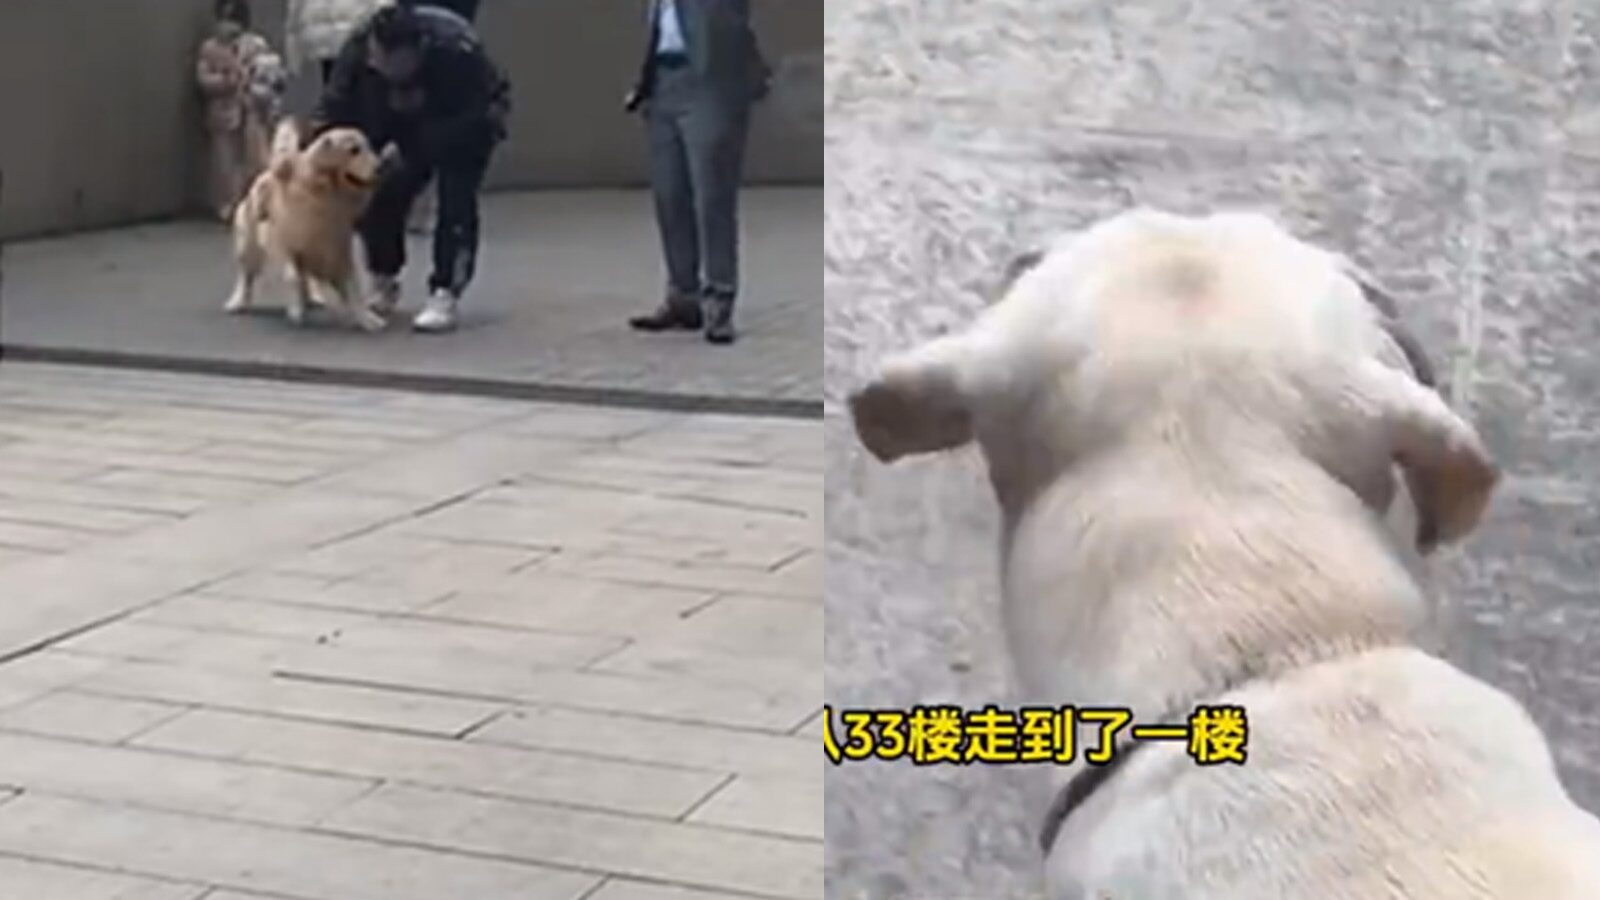 สาวจีนสู้สุดใจ หอบหมา-แมว หนักรวมกว่า 50 กิโลฯ วิ่งหนีไฟไหม้กว่า 30 ชั้น